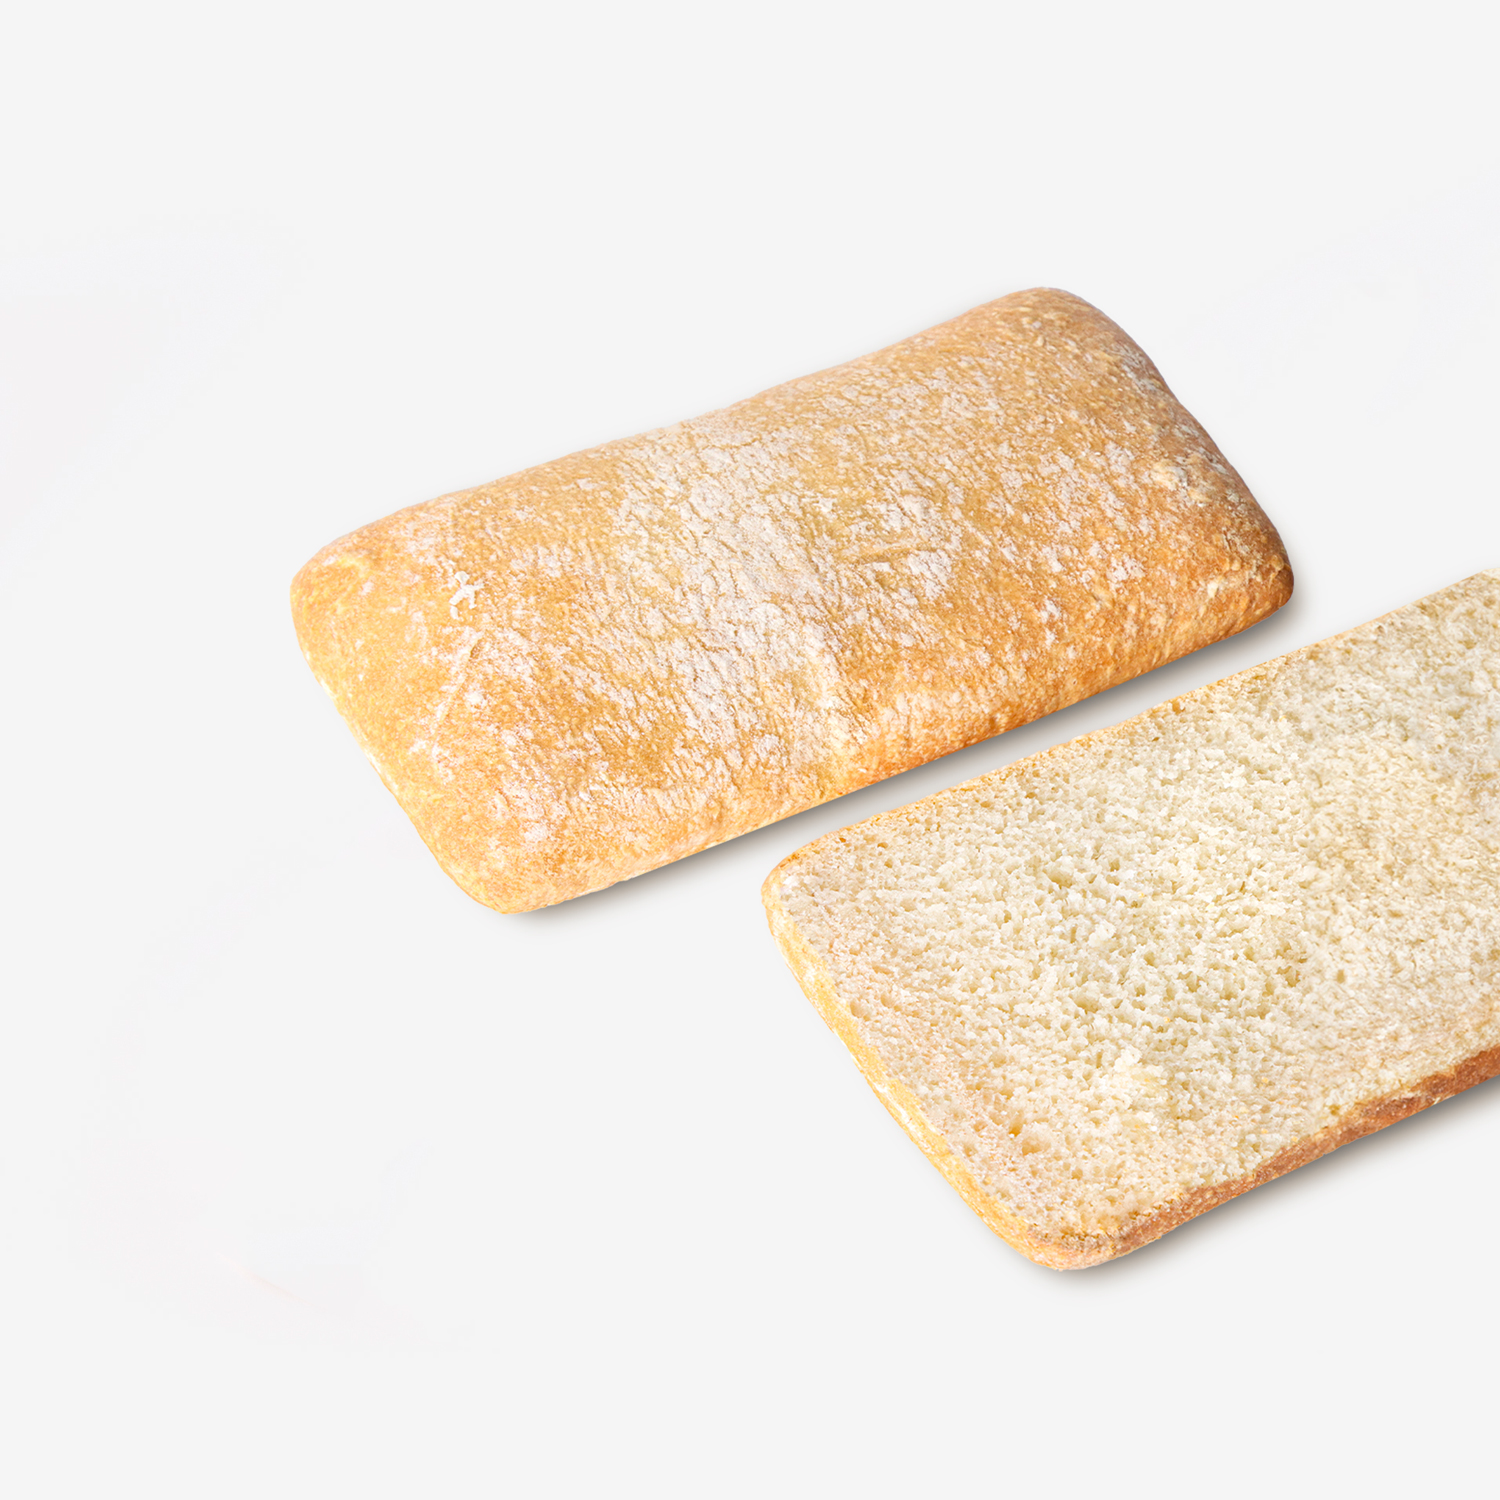 ขนมปังแช่แข็ง : SYNOVA ขนมปังเซียบัตต้า (ยกกล่อง)